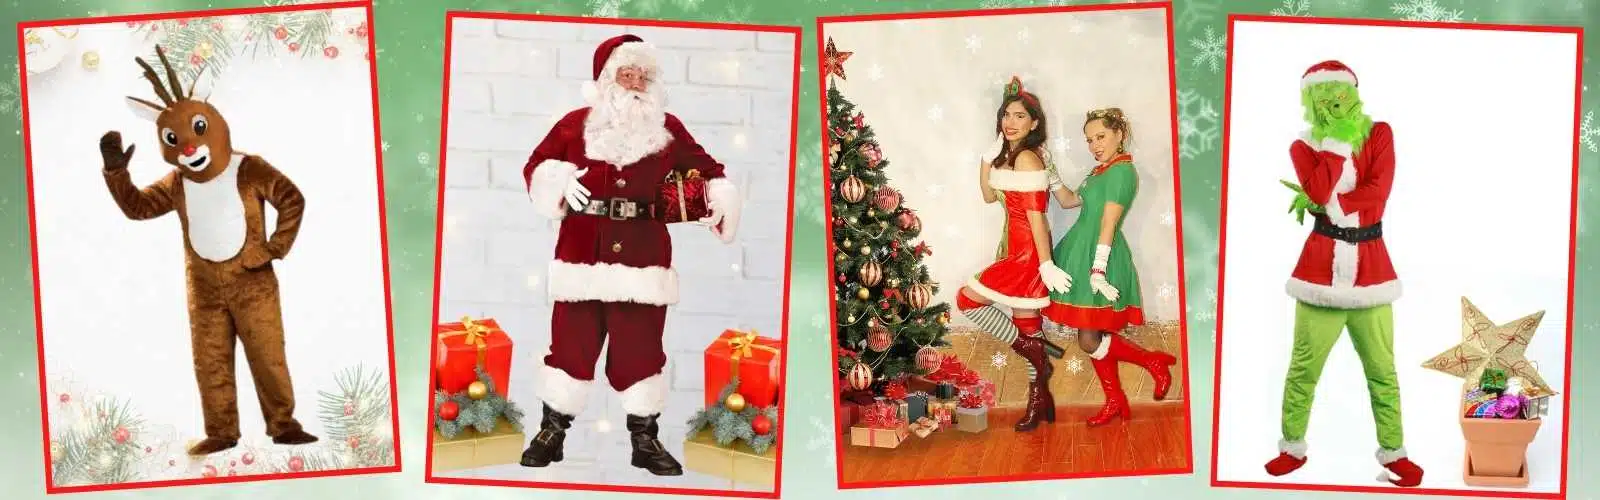 Christmas Parties and Santa Claus Visits